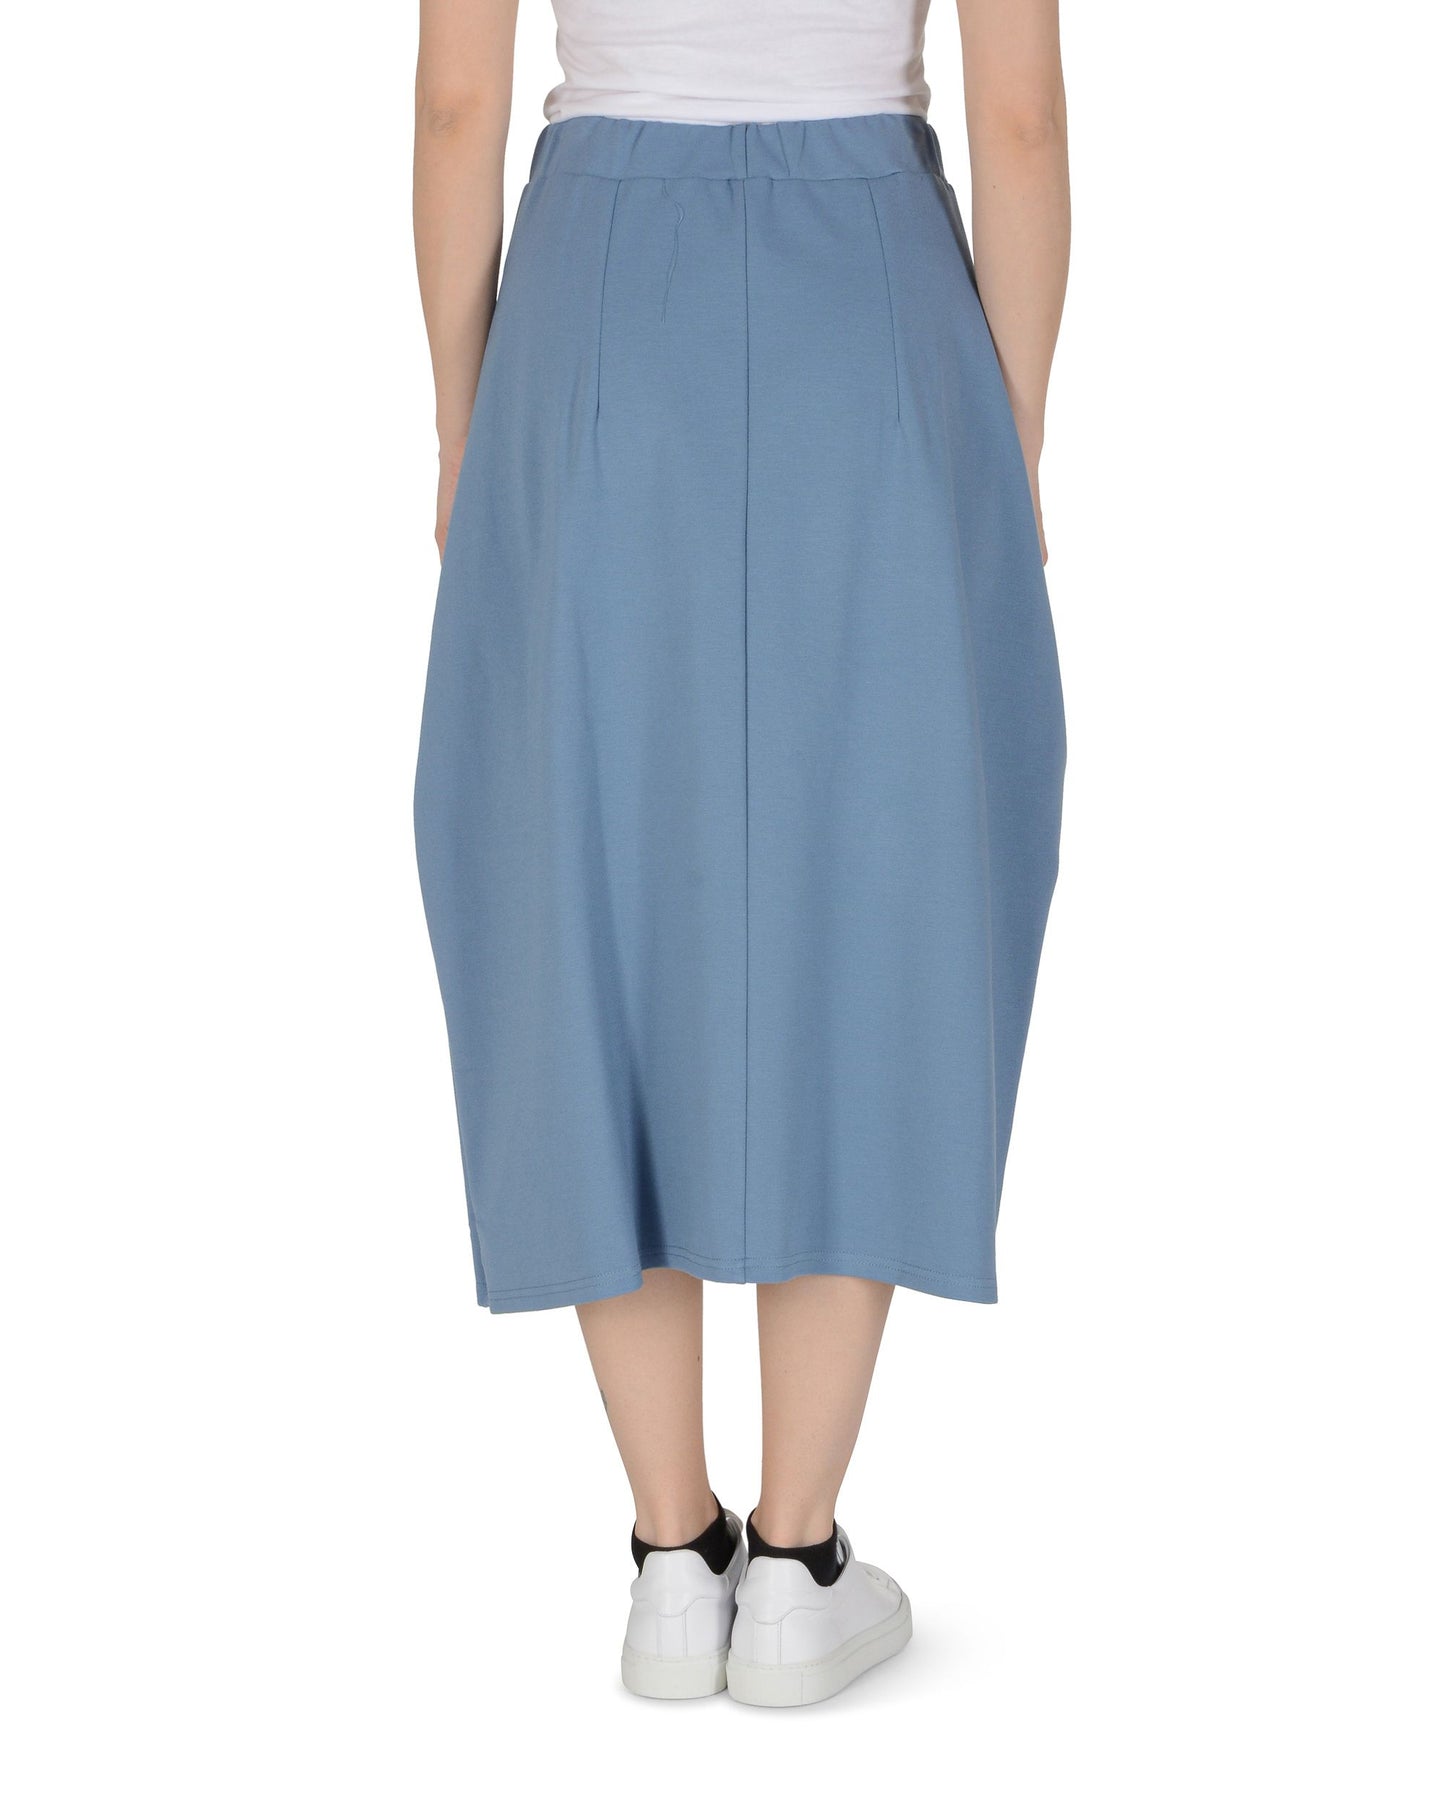 19V69 Italia Womens Skirt Light Blue BAMBI LIGHT BLUE